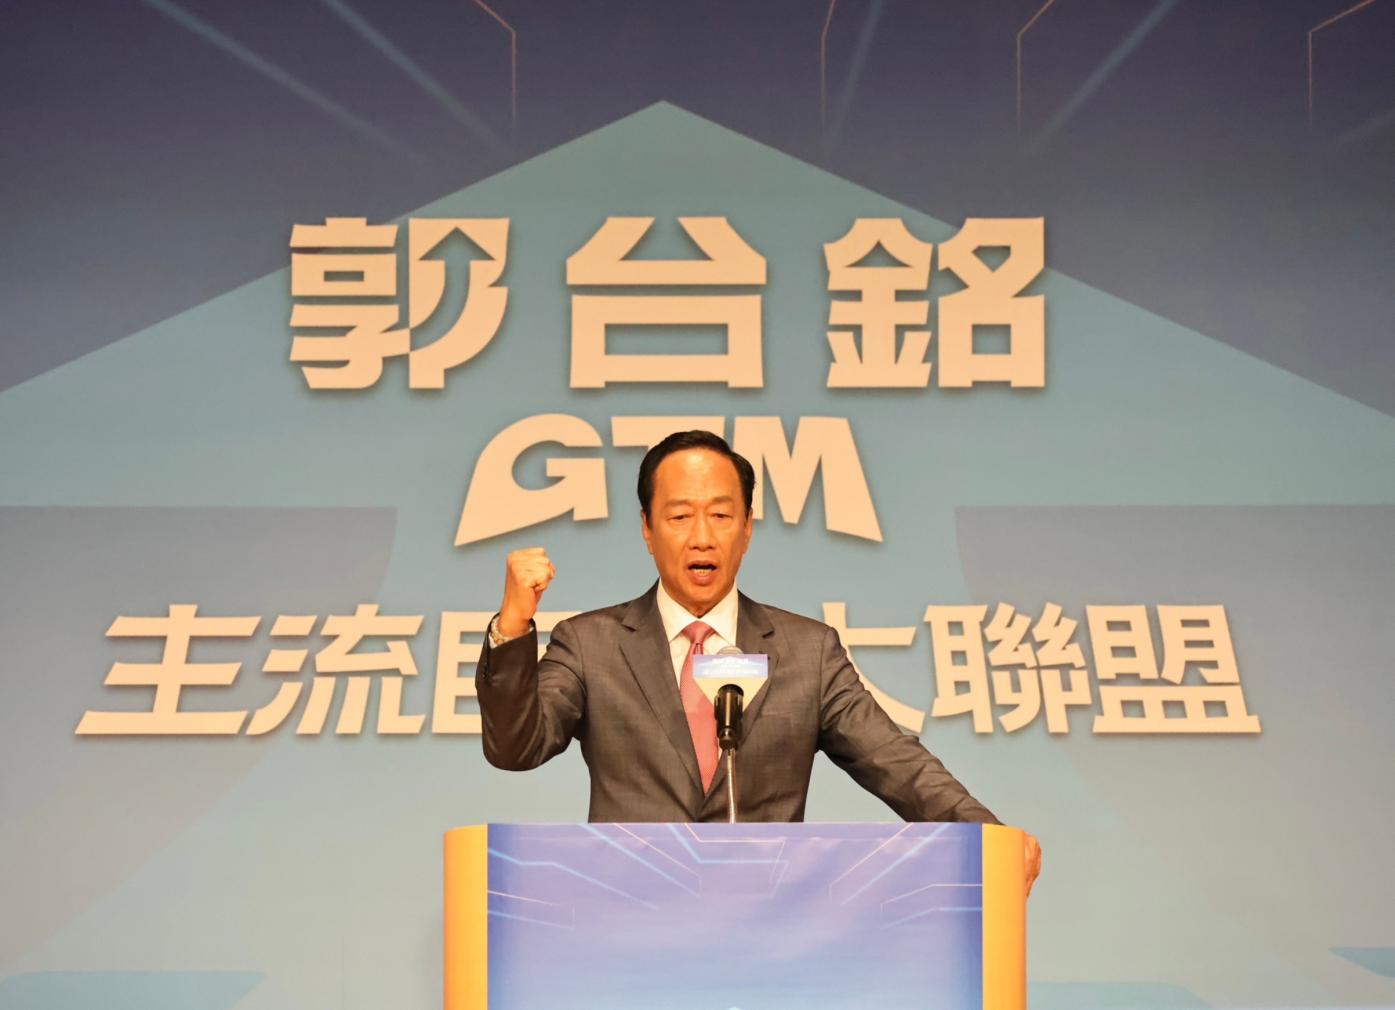 鴻海創辦人郭台銘宣布參選總統。林啟弘攝